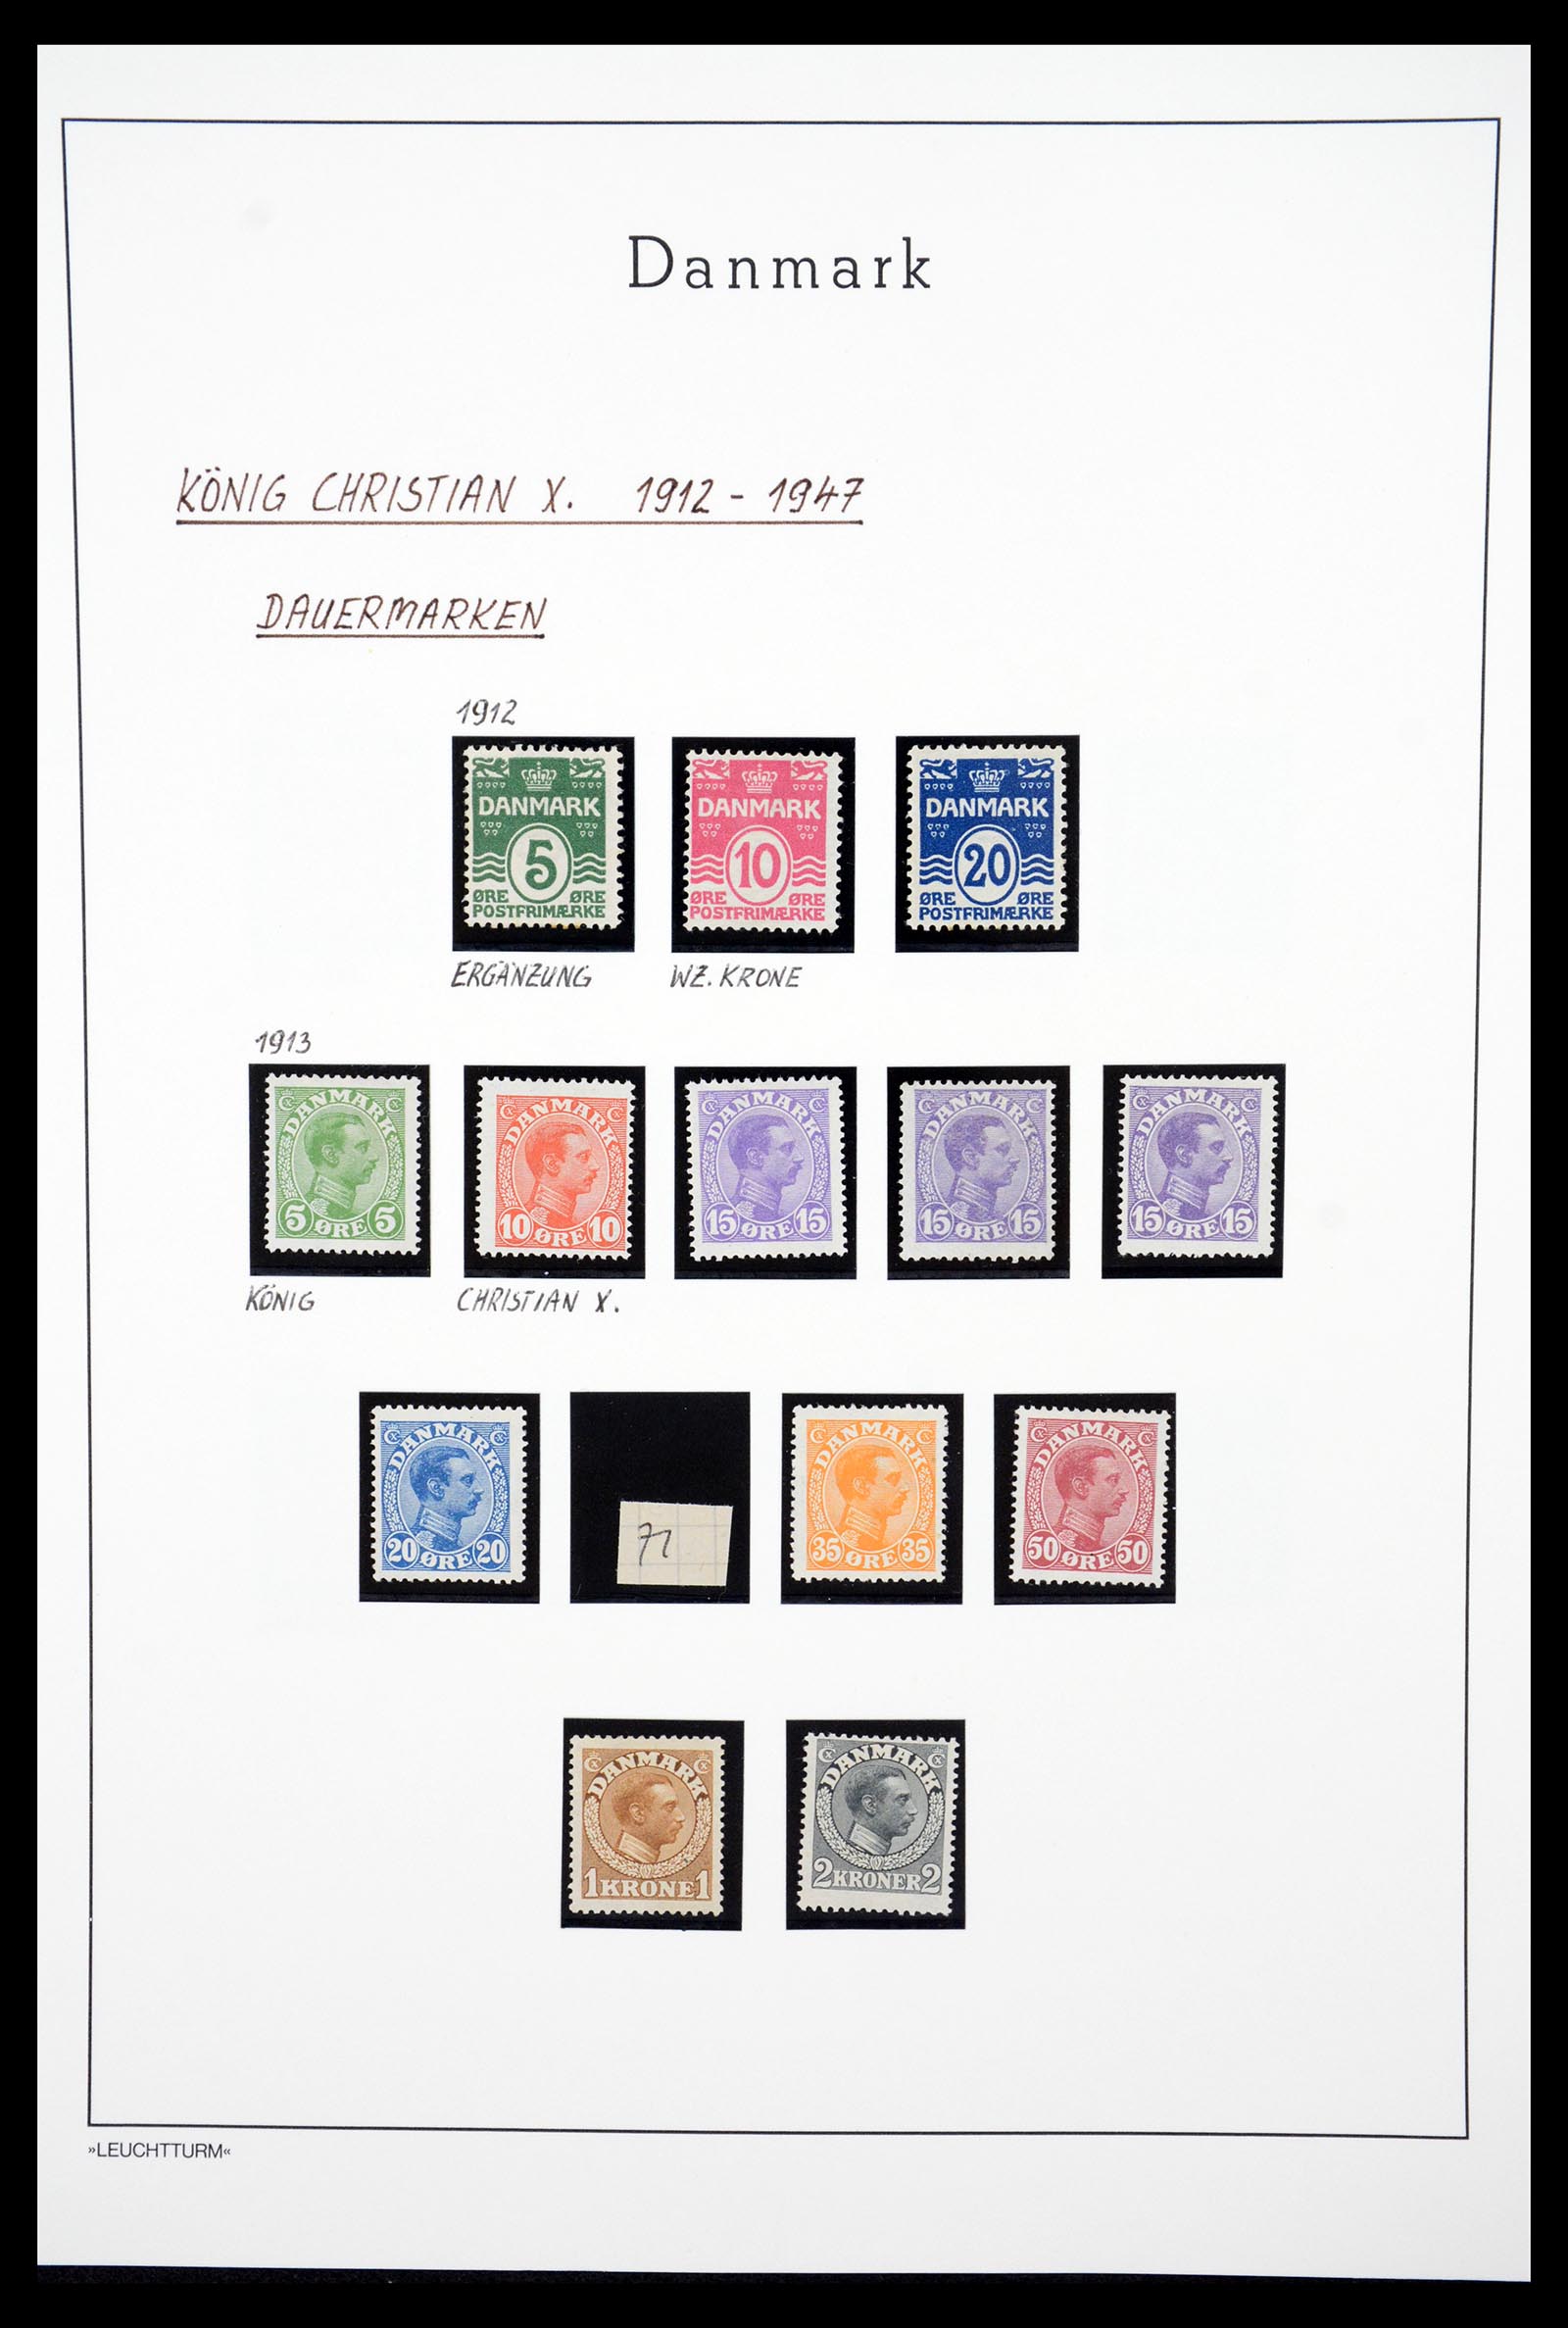 36612 034 - Stamp collection 36612 Denemarken 1851-1990.